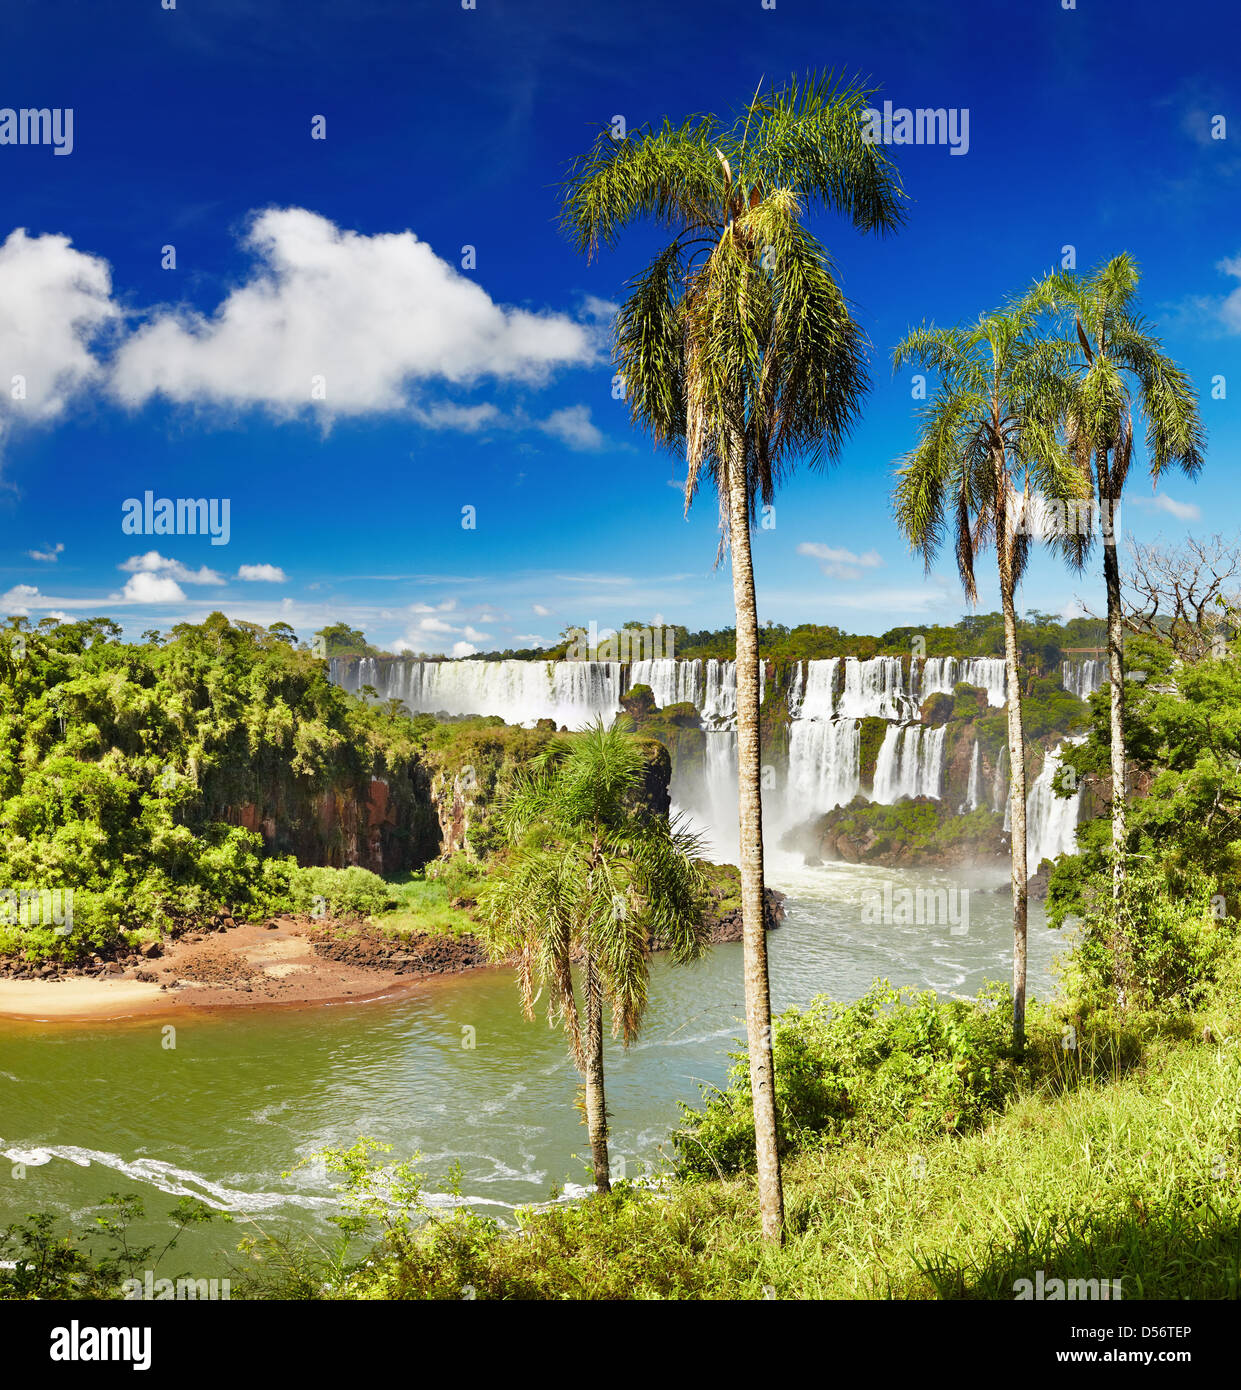 Iguassu Falls, la plus grande série de cascades du monde, situé à la frontière brésilienne et argentine Banque D'Images